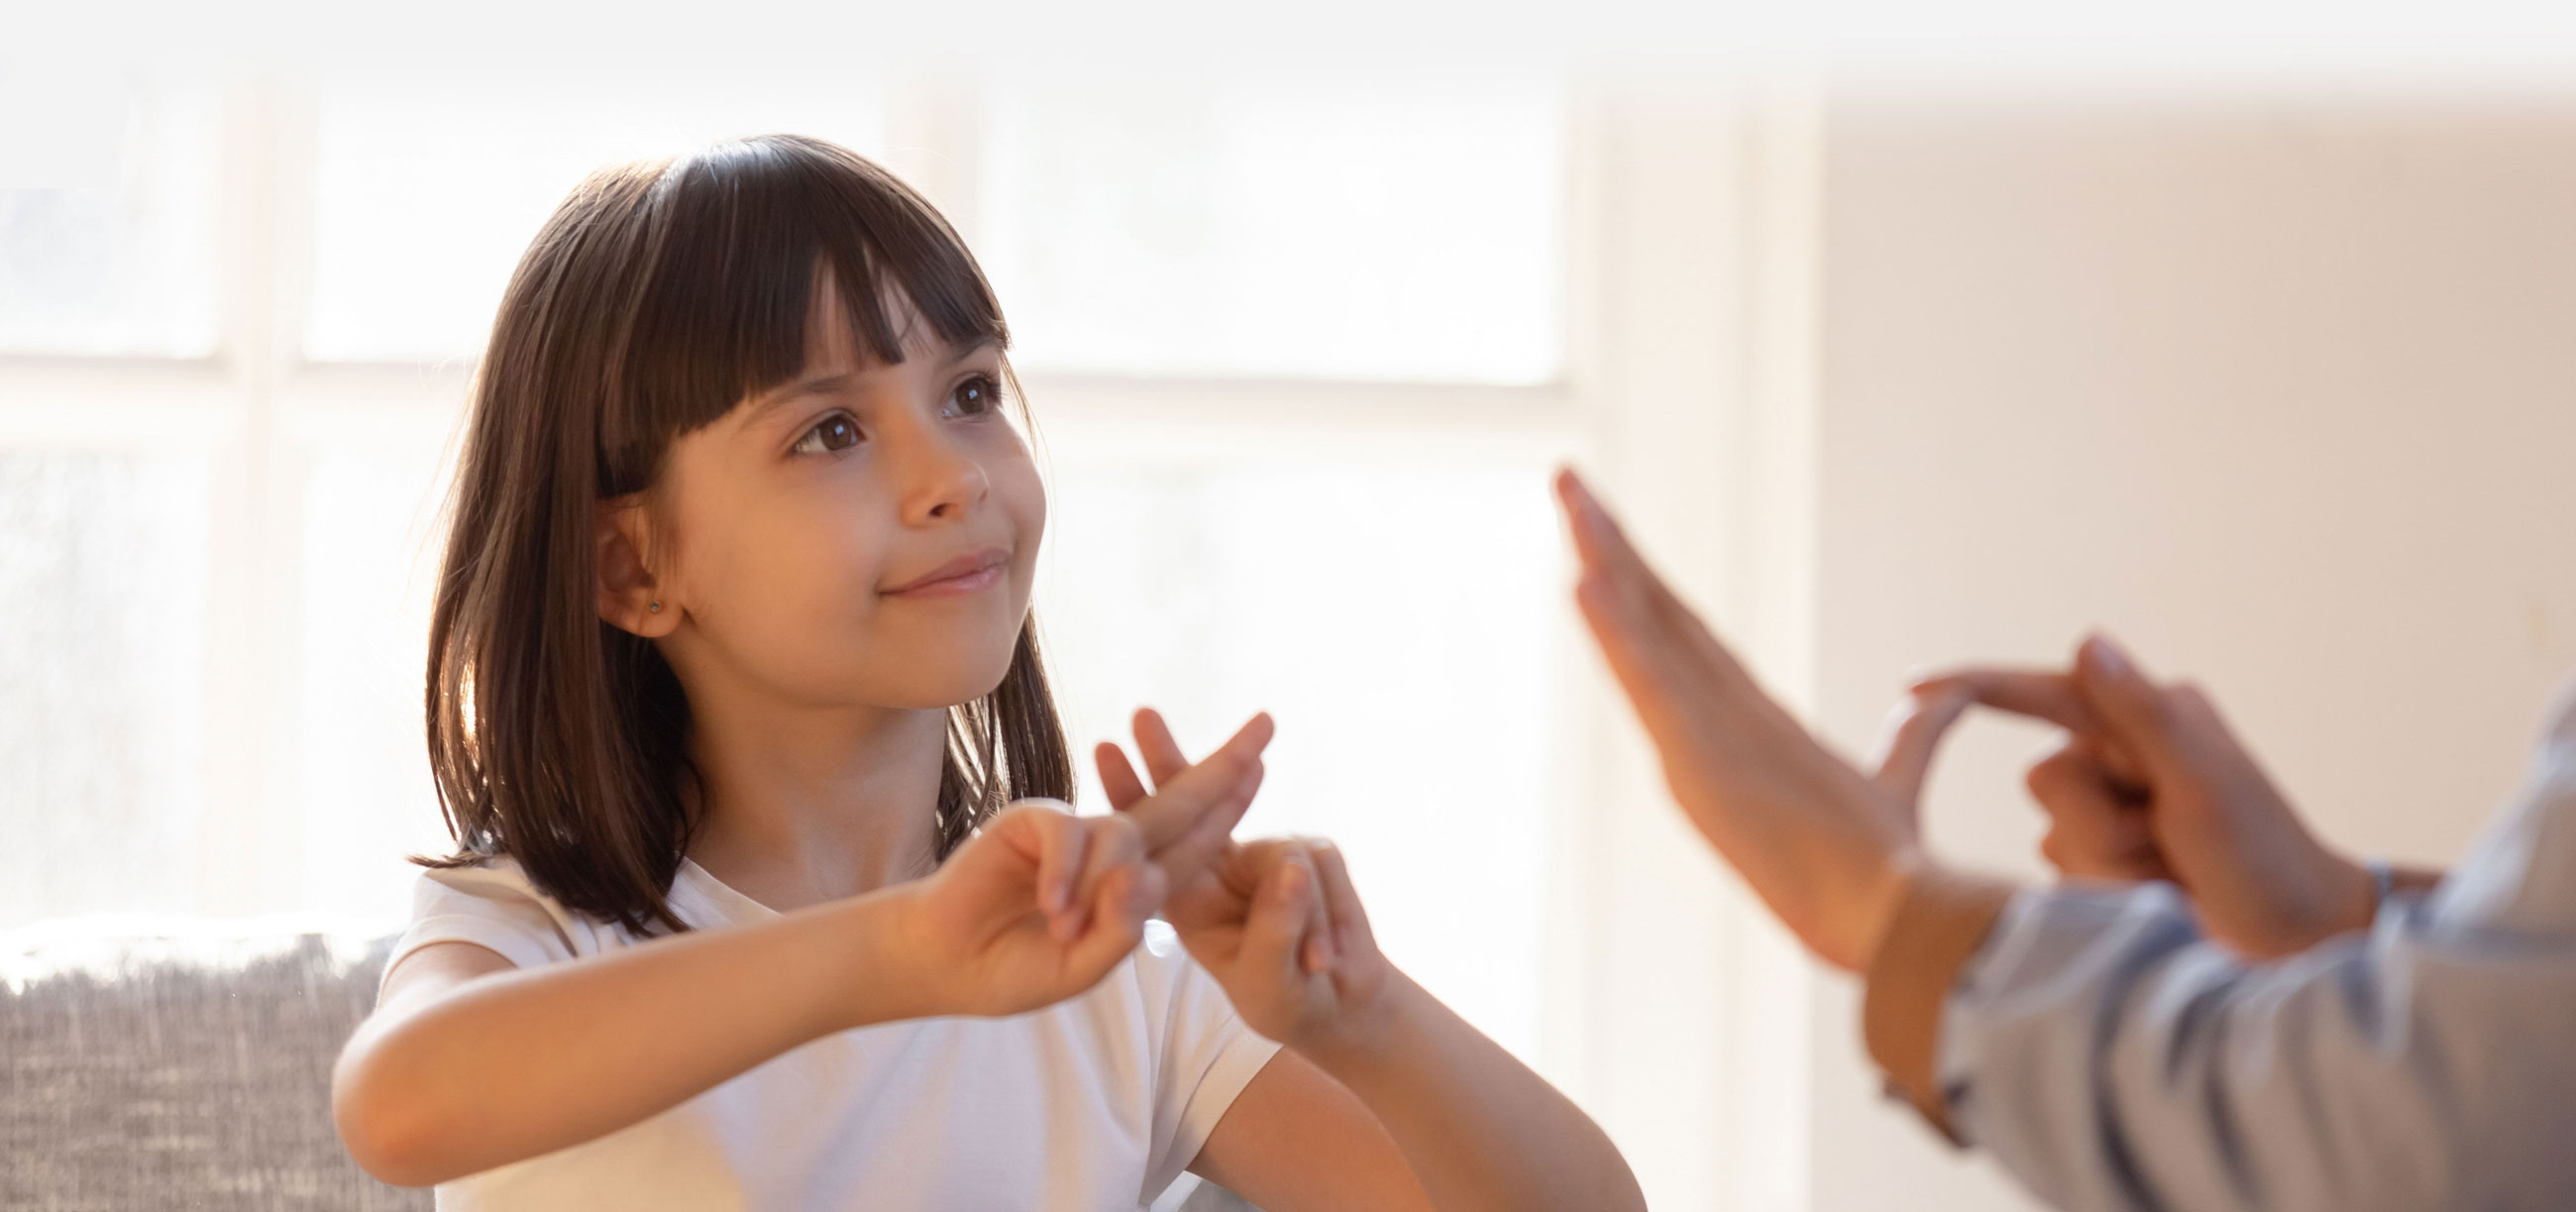 Girl using sign language